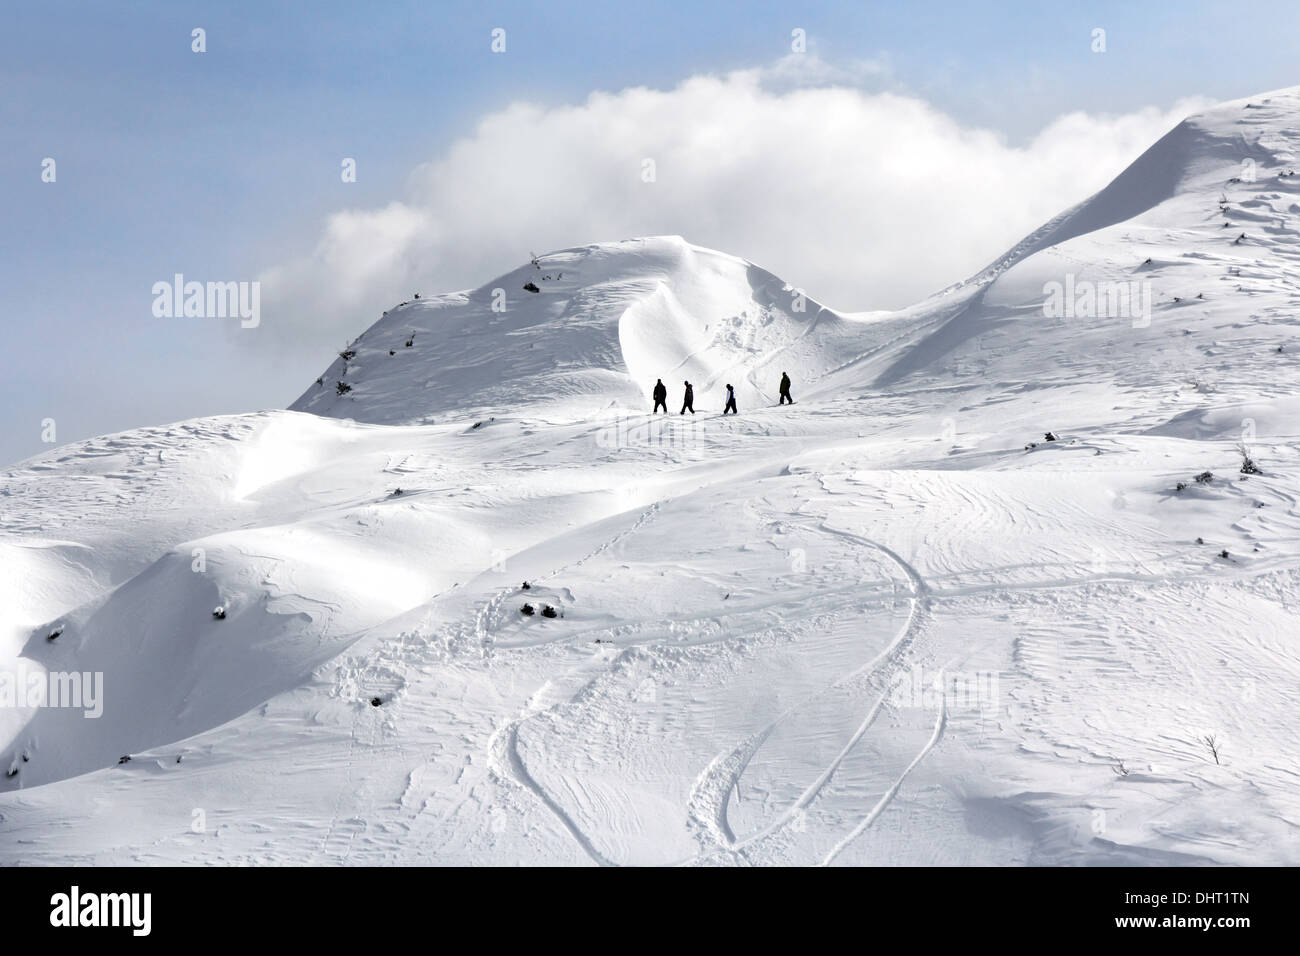 Vier Snowboarder an der Spitze des Berges Abfahrt vorbereiten Stockfoto